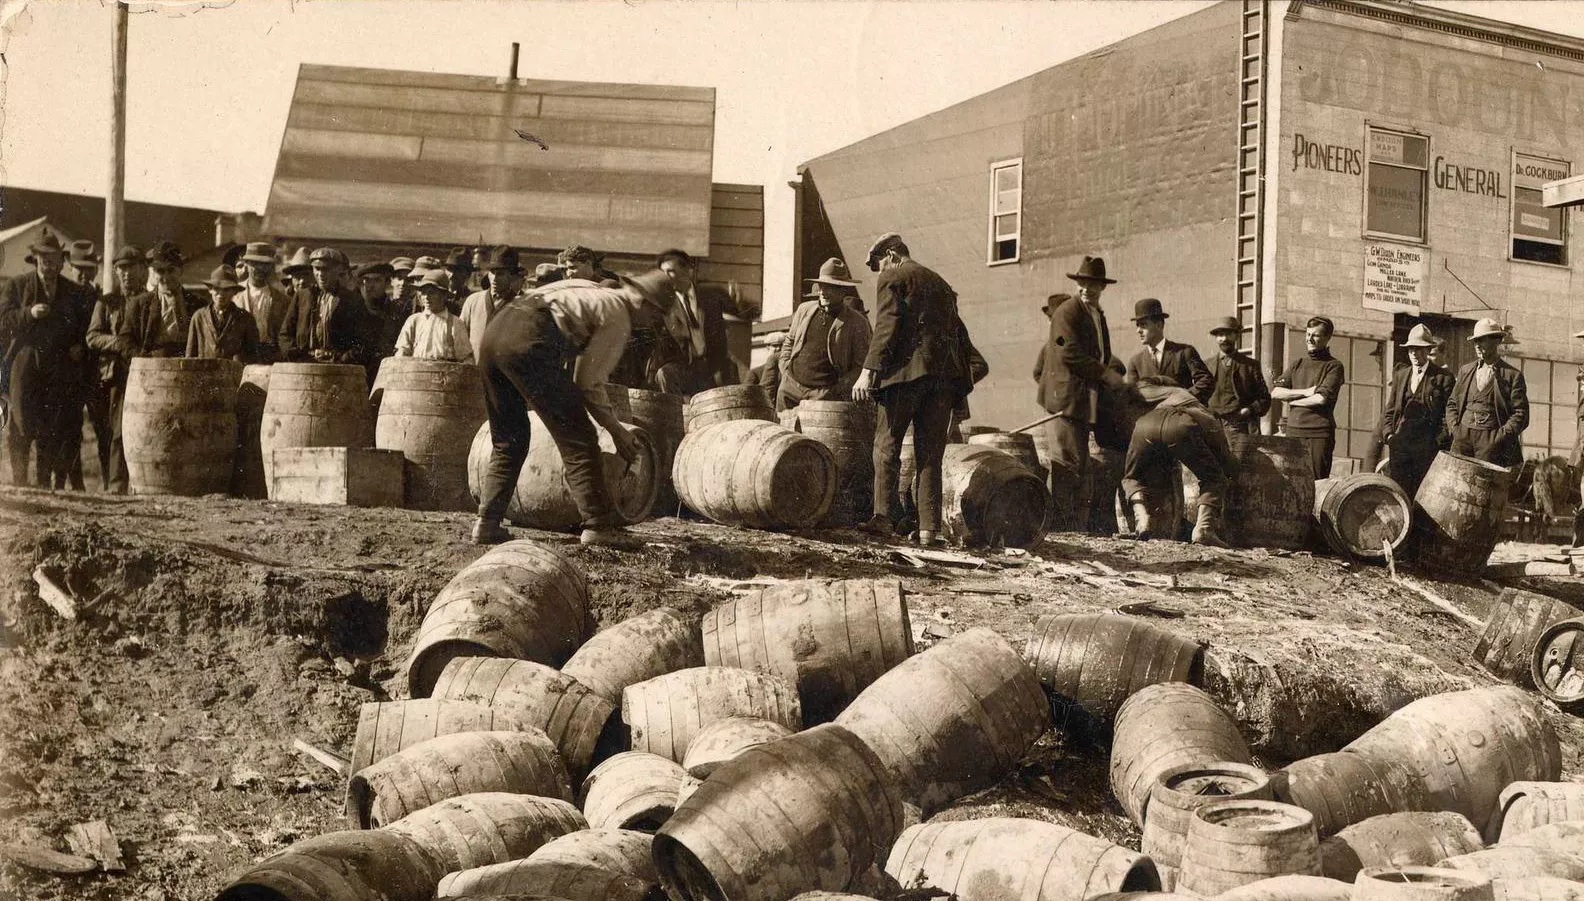 La llei seca, prohibició de l’alcohol que es va instaurar als Estats Units entre el 1920 i el 1933